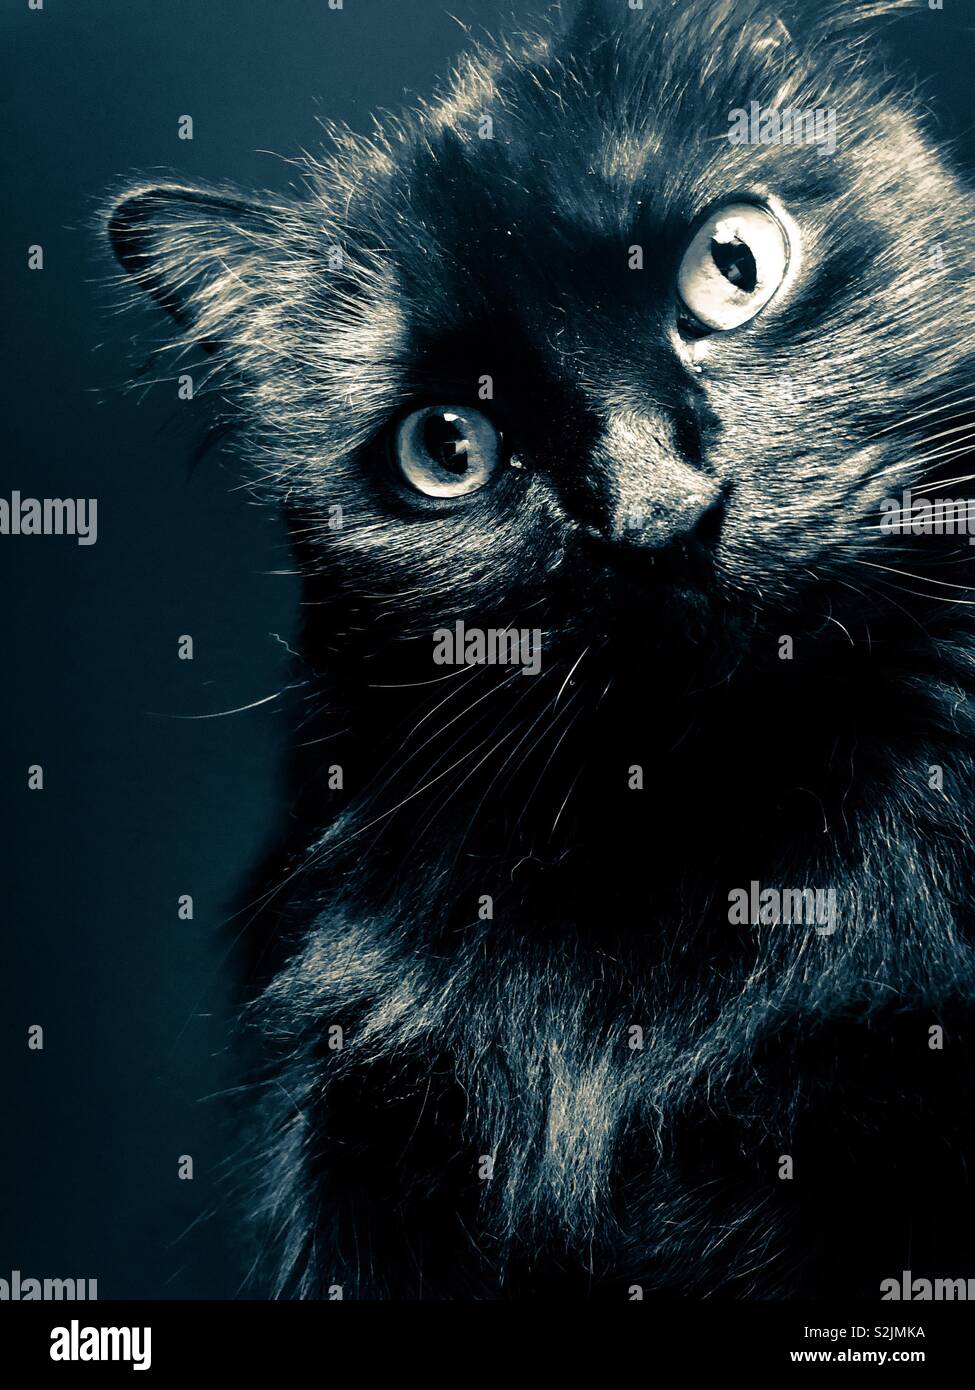 Bellissimo gatto nero ritratto con drammatica filtro applicato Foto stock -  Alamy